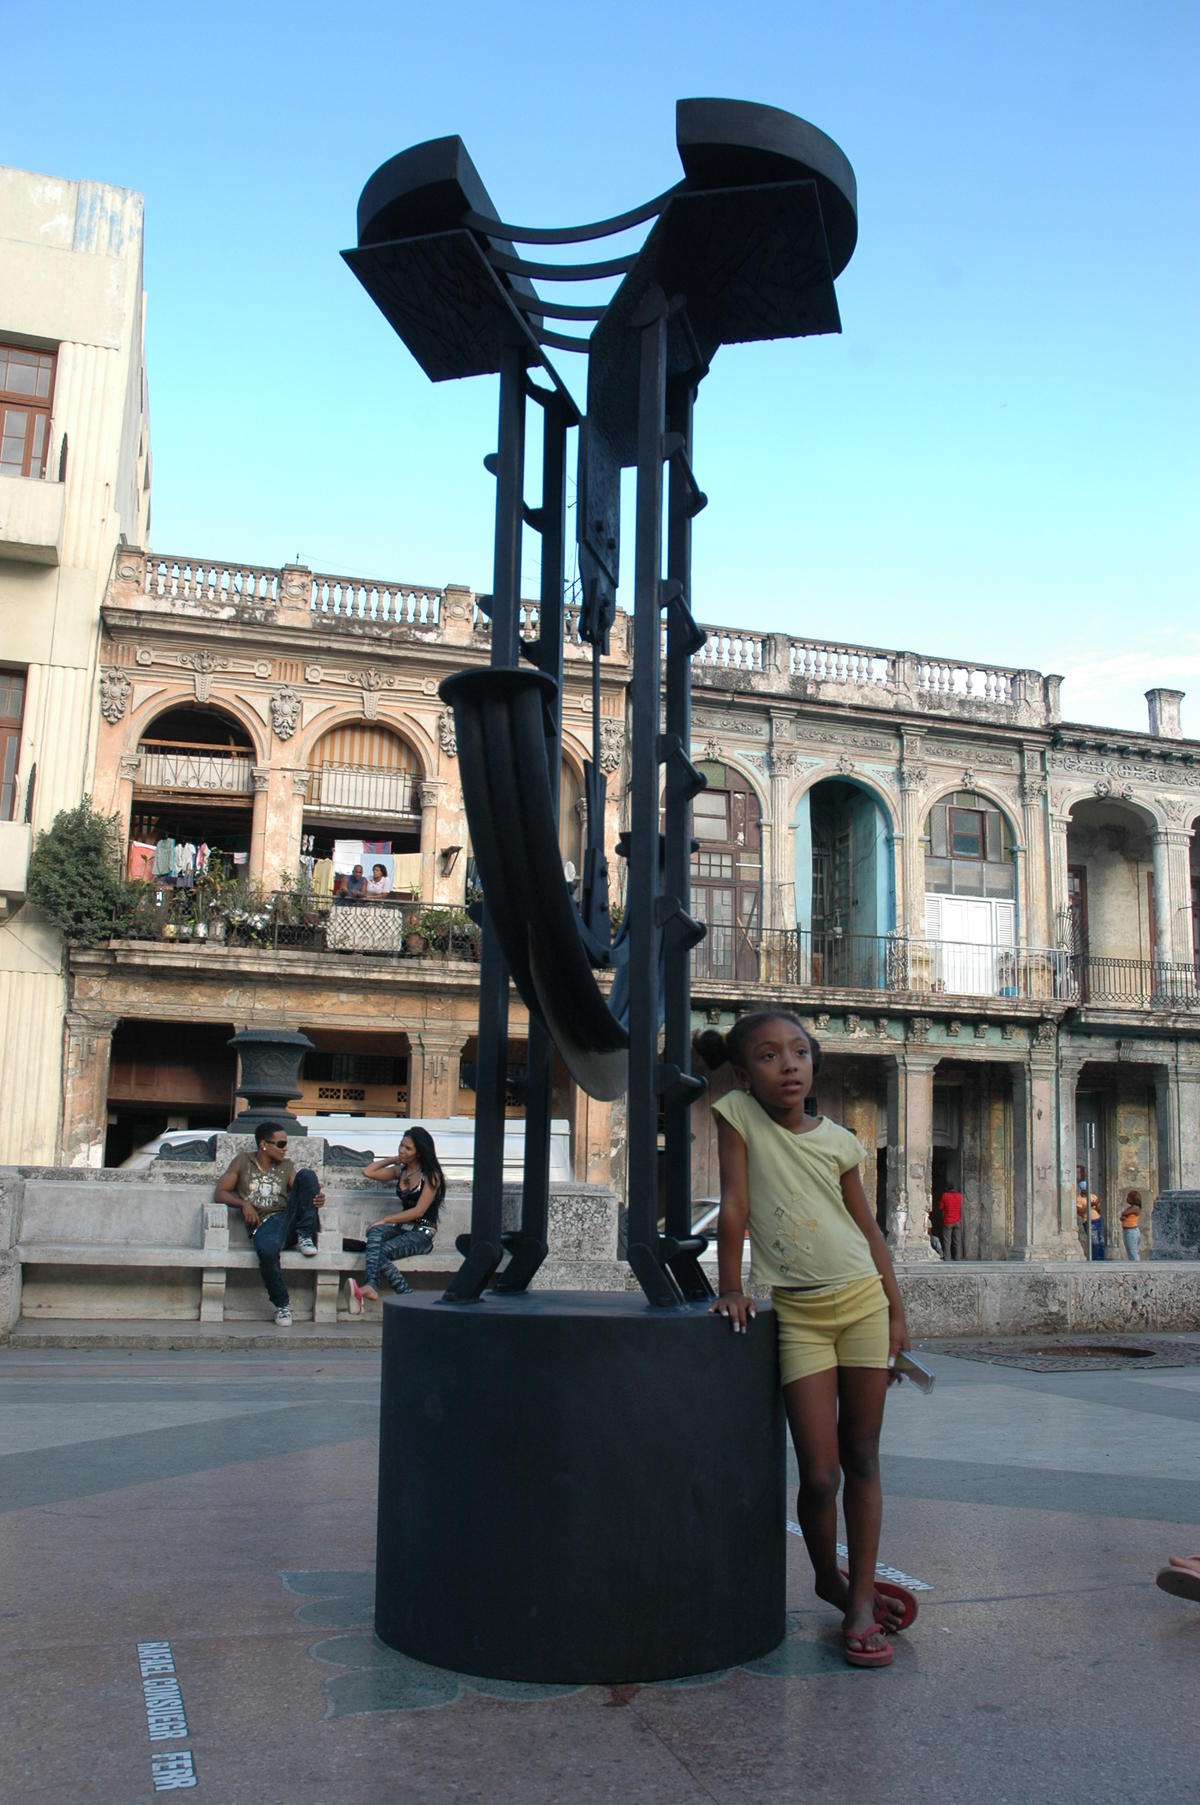 Exposición Escultofierro, Rafael Consuegra. 2009. Paseo del Prado. Obras realizadas en acero conformado